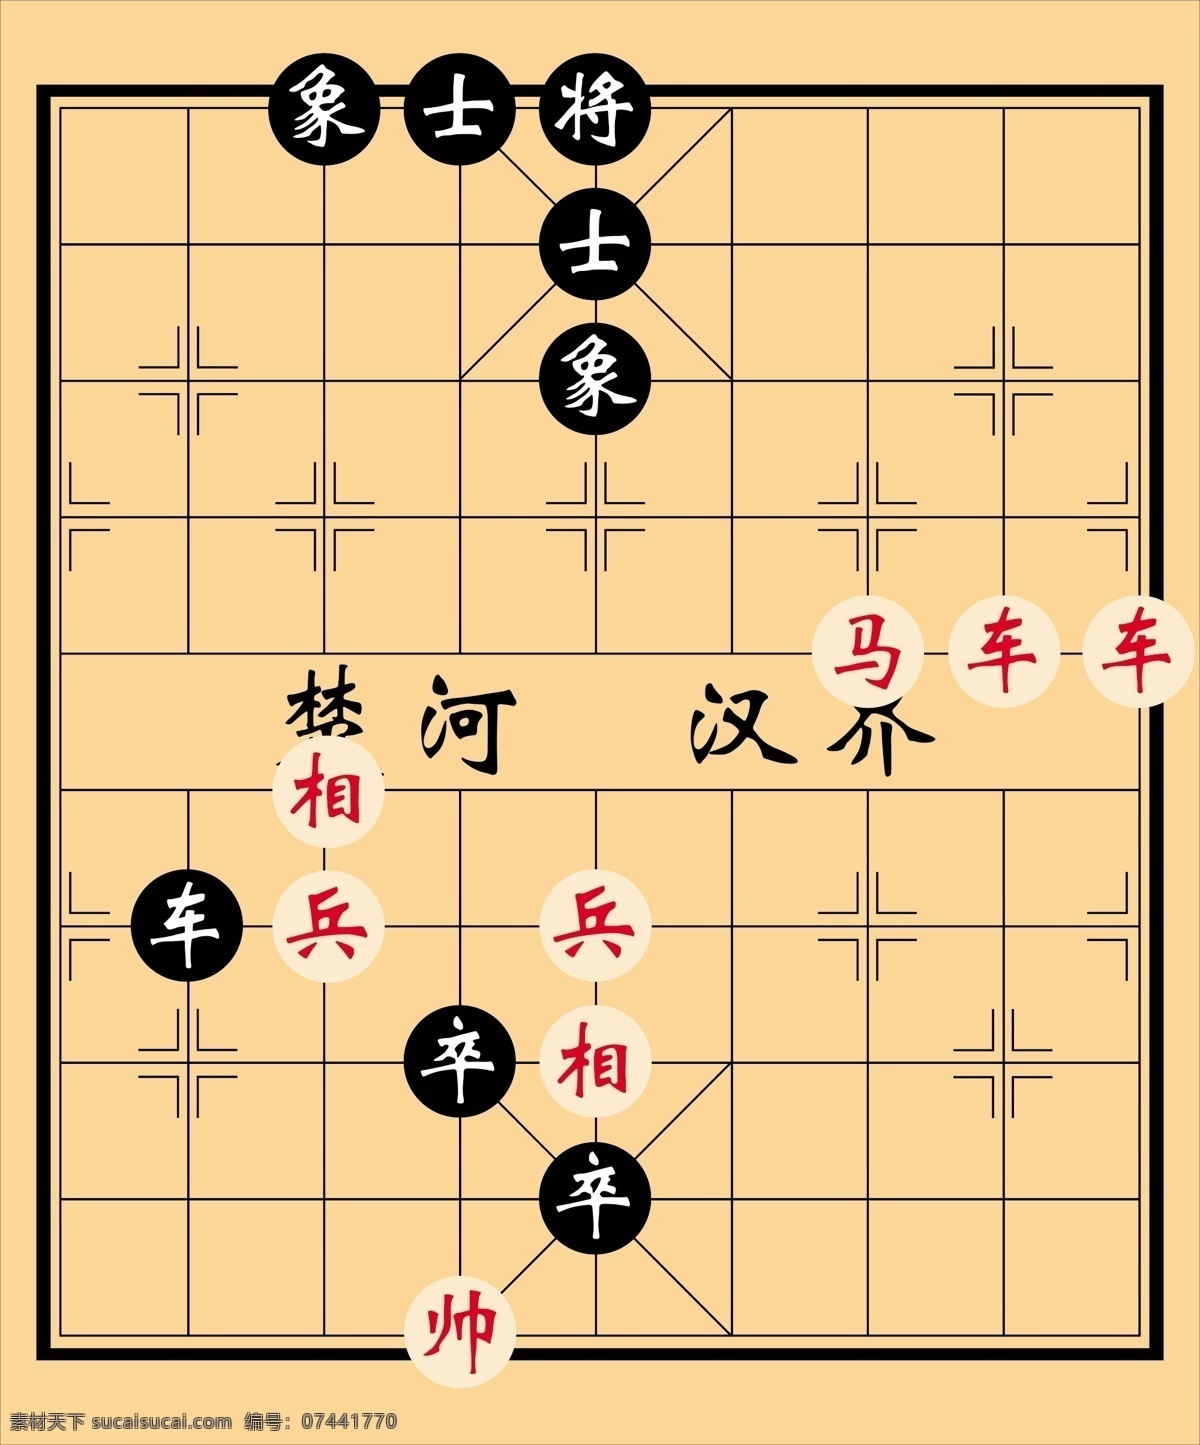 象棋 娱乐 游戏 棋牌 文化艺术 传统文化 棋牌类 矢量图库